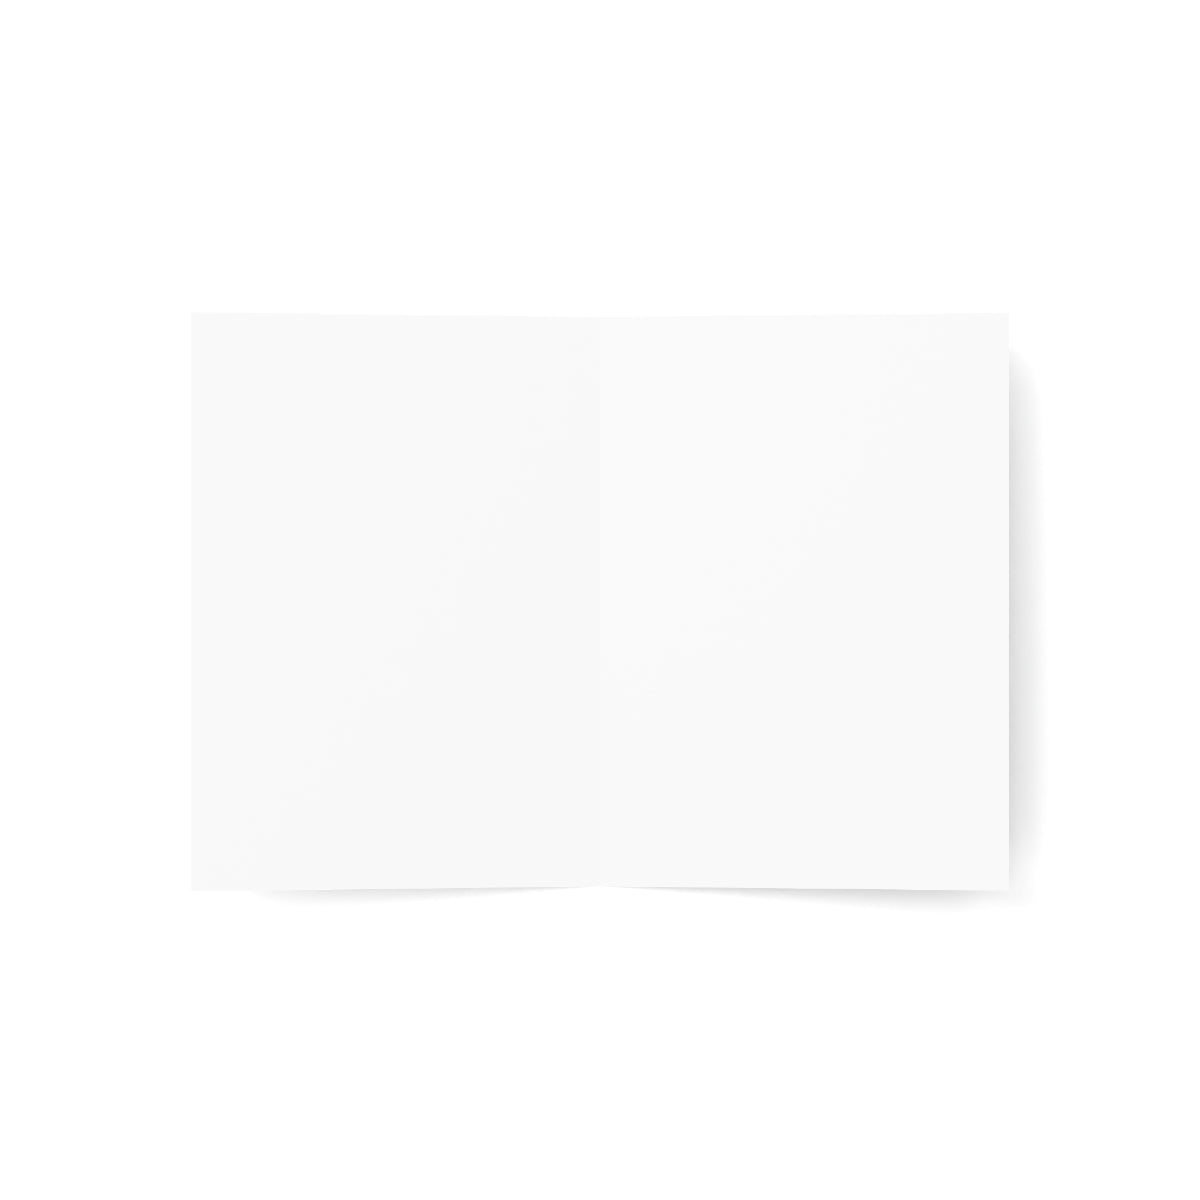 Cartes de notes mates pliées Charleston + enveloppes (10 pièces) 